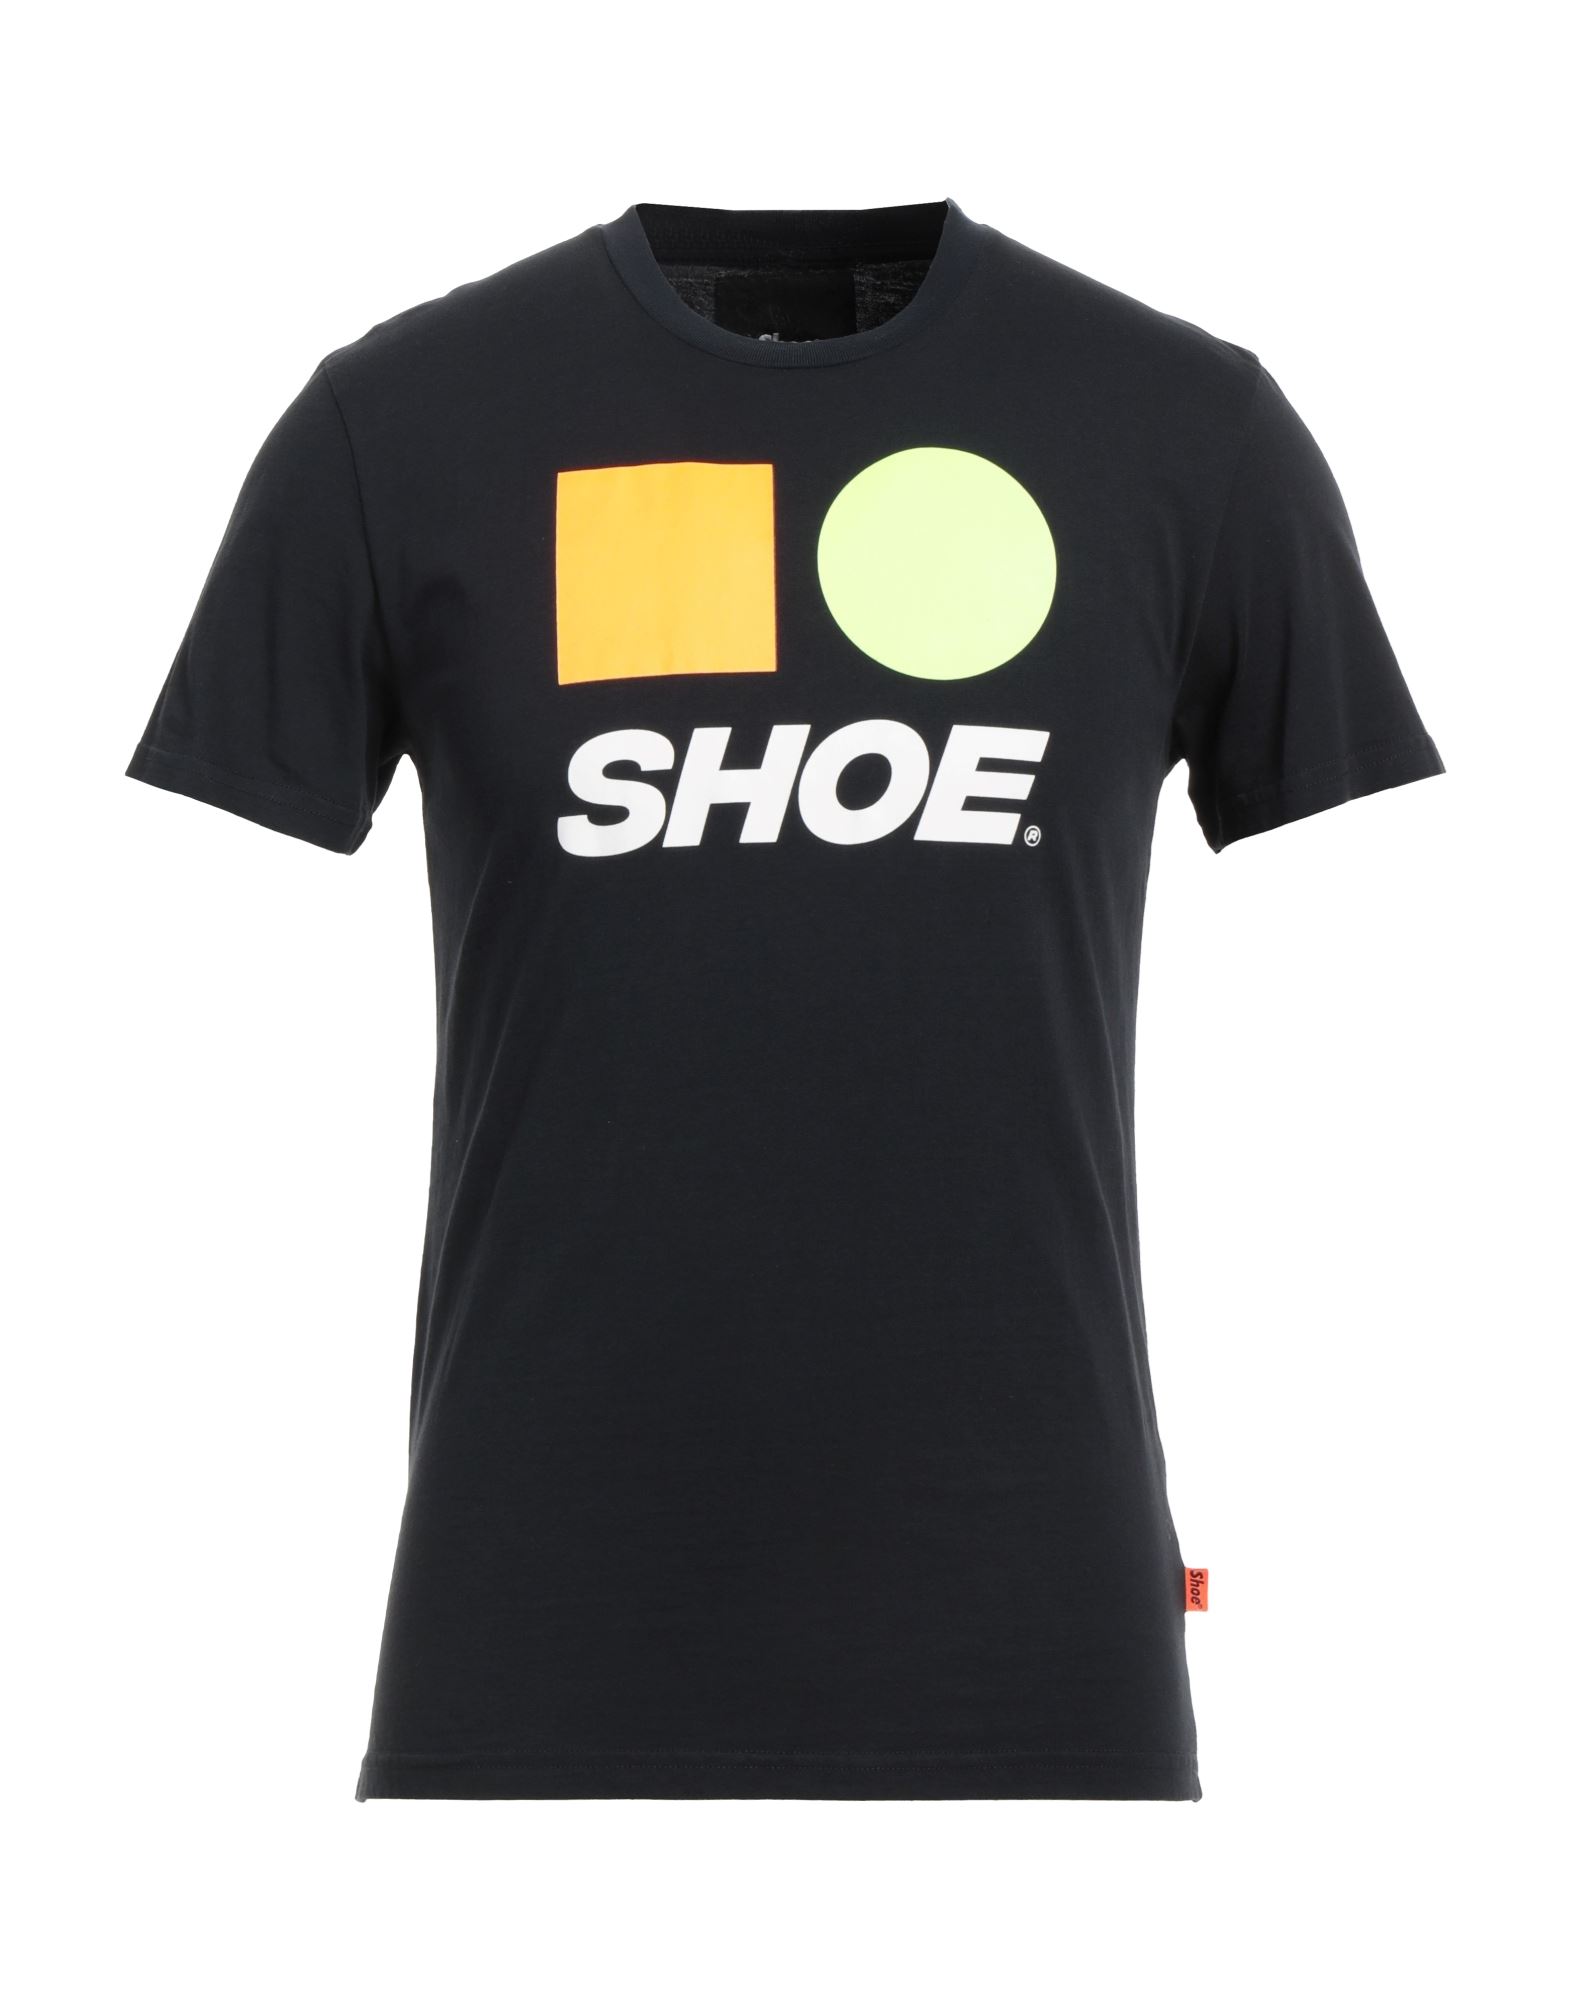 Shoe® Shoe Man T-shirt Midnight Blue Size S Cotton